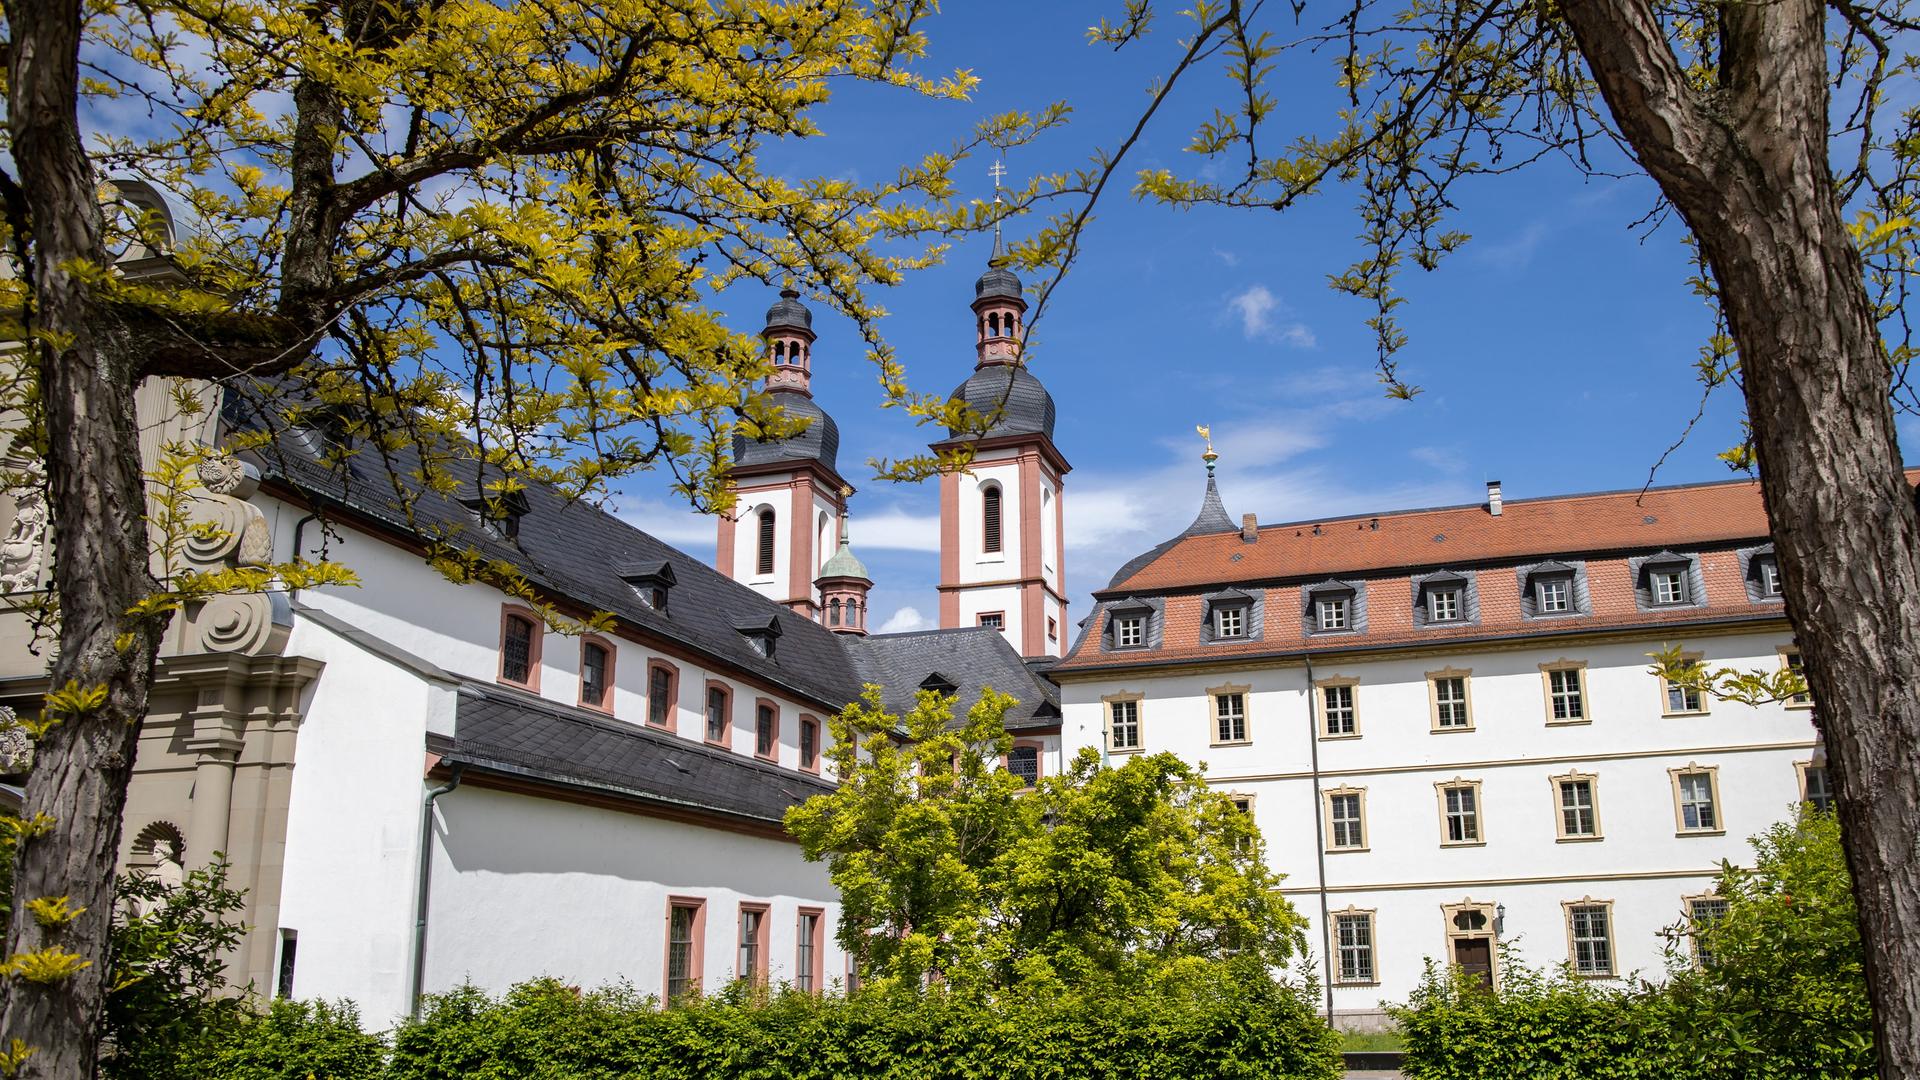 Die Klosterkirche St. Michael auf dem Gelände von Kloster Oberzell in Unterfranken, wo eine Schwester zwei Frauen vor Zwangsprostitution und Menschenhandel bewahrte - und einen Strafbefehl bekam. 